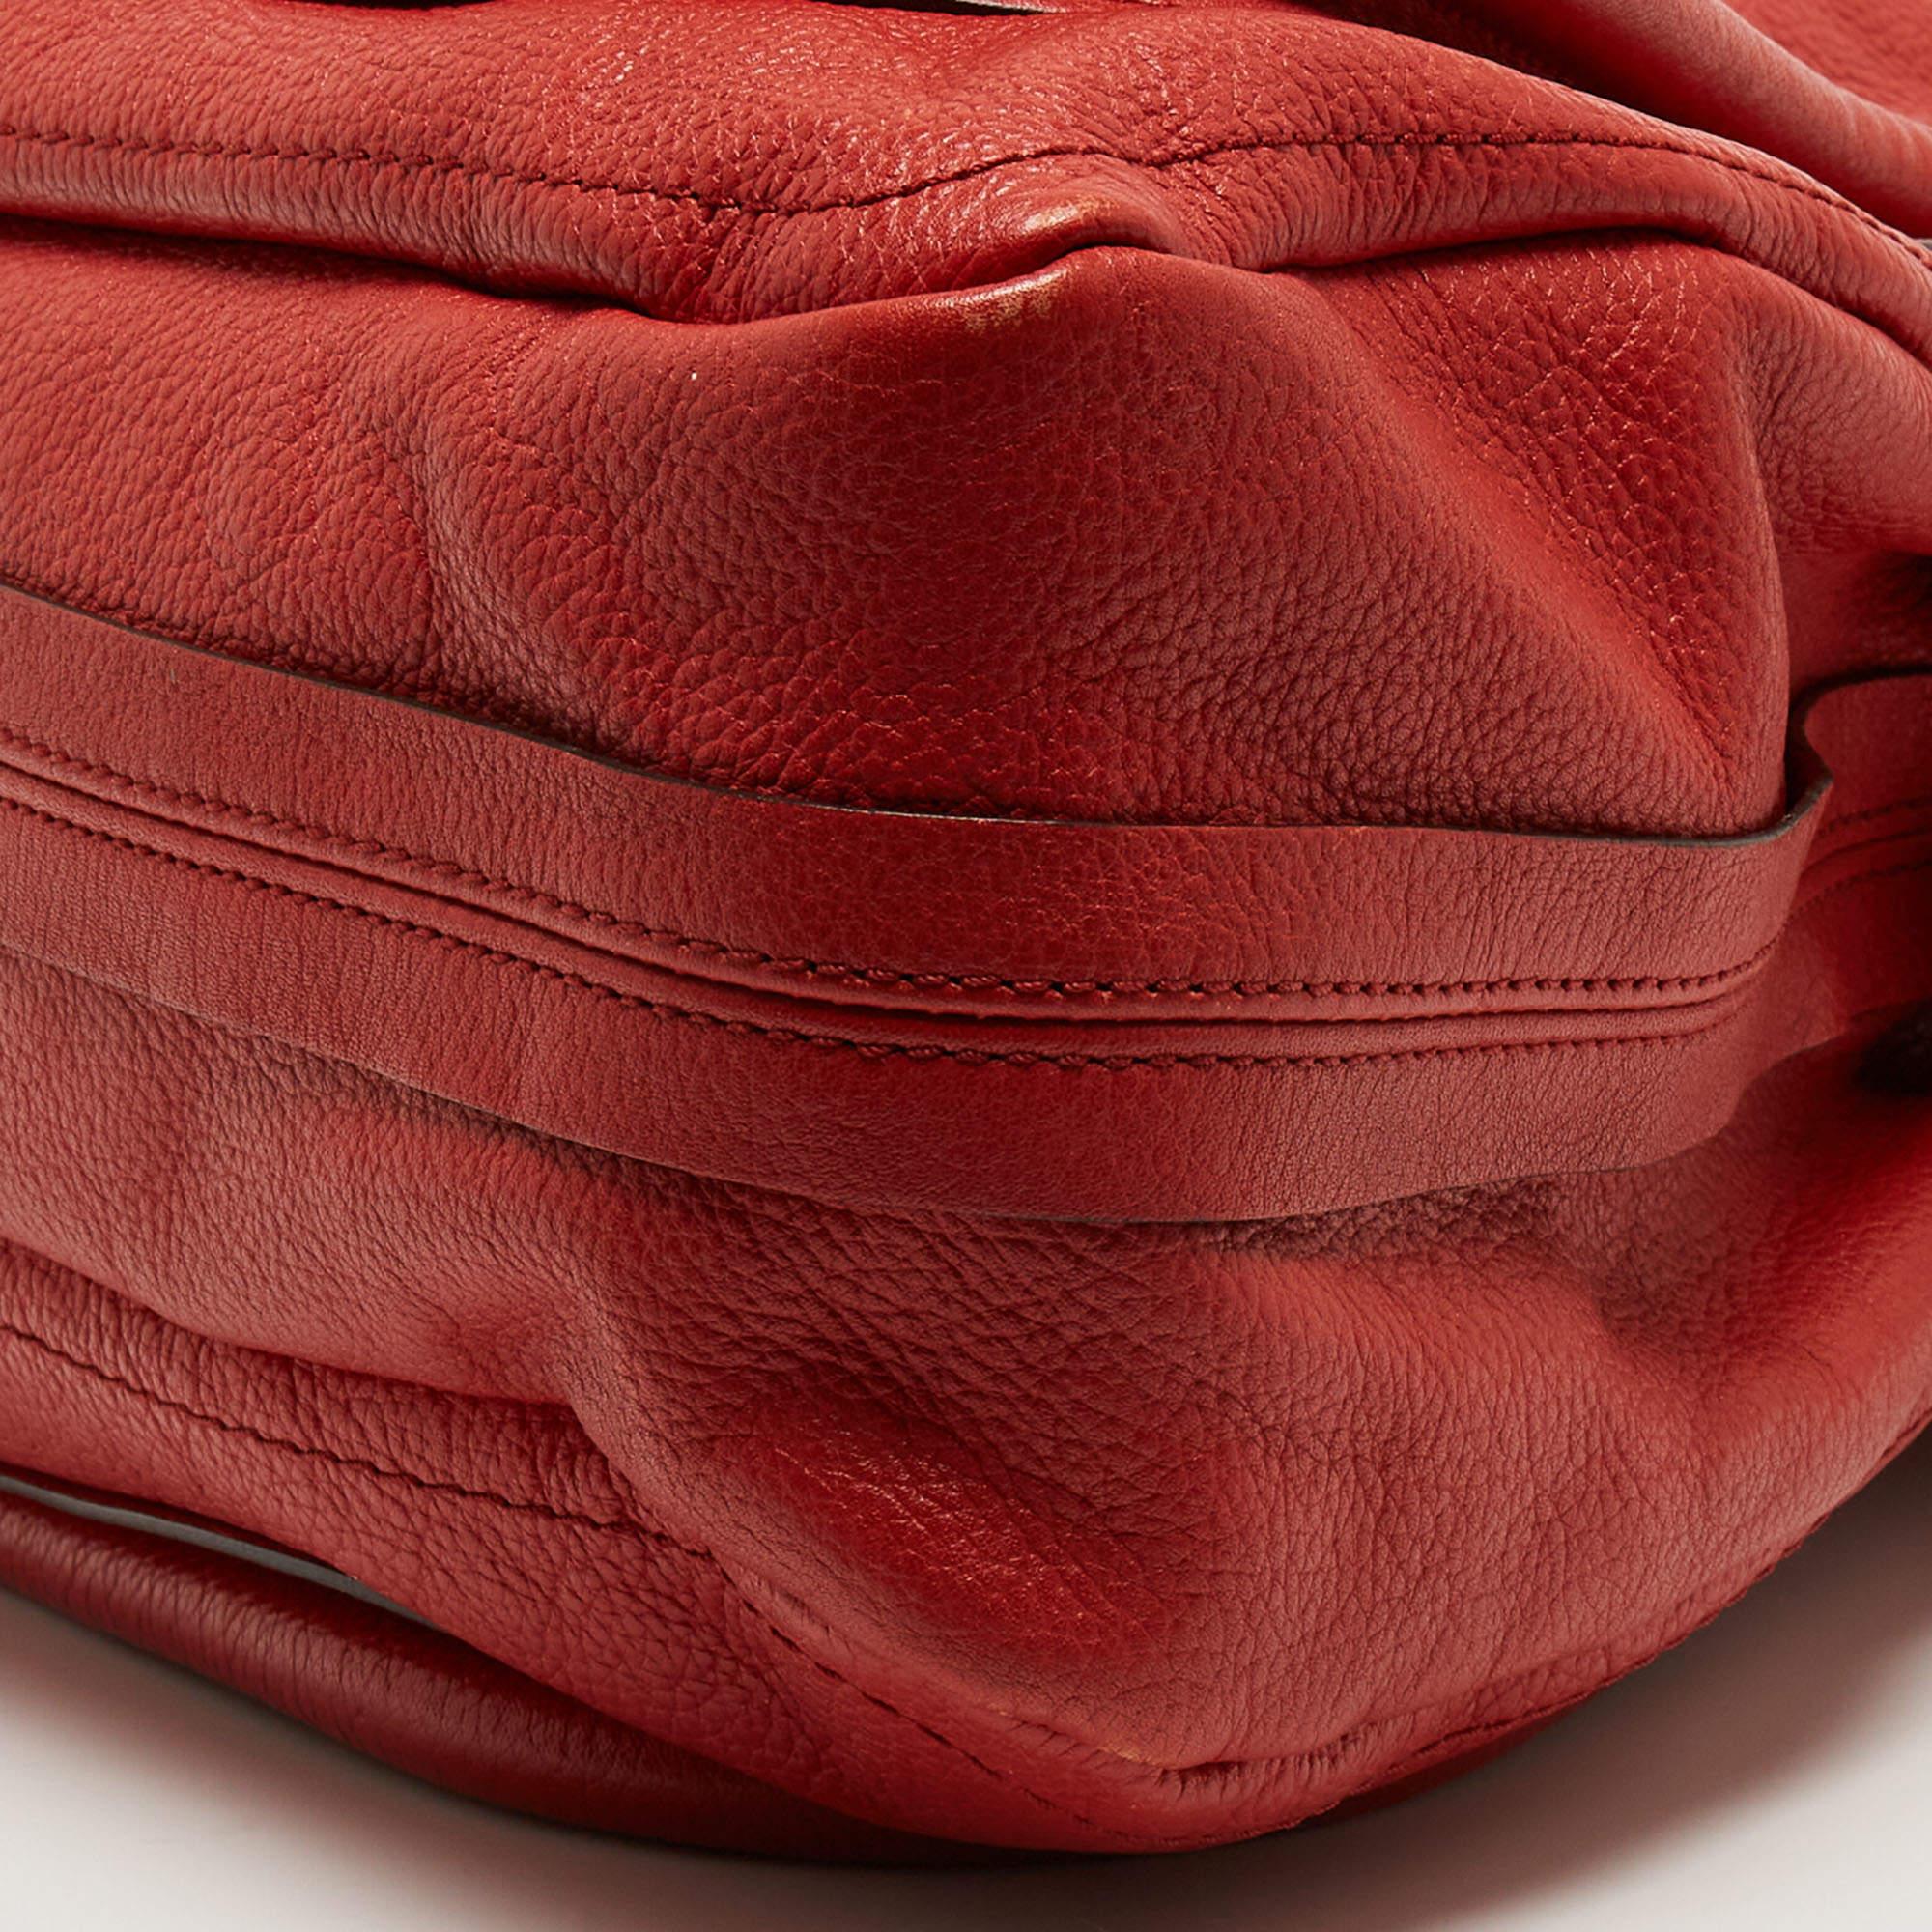 Chloe Brick Red Leather Large Paraty Shoulder Bag For Sale 4